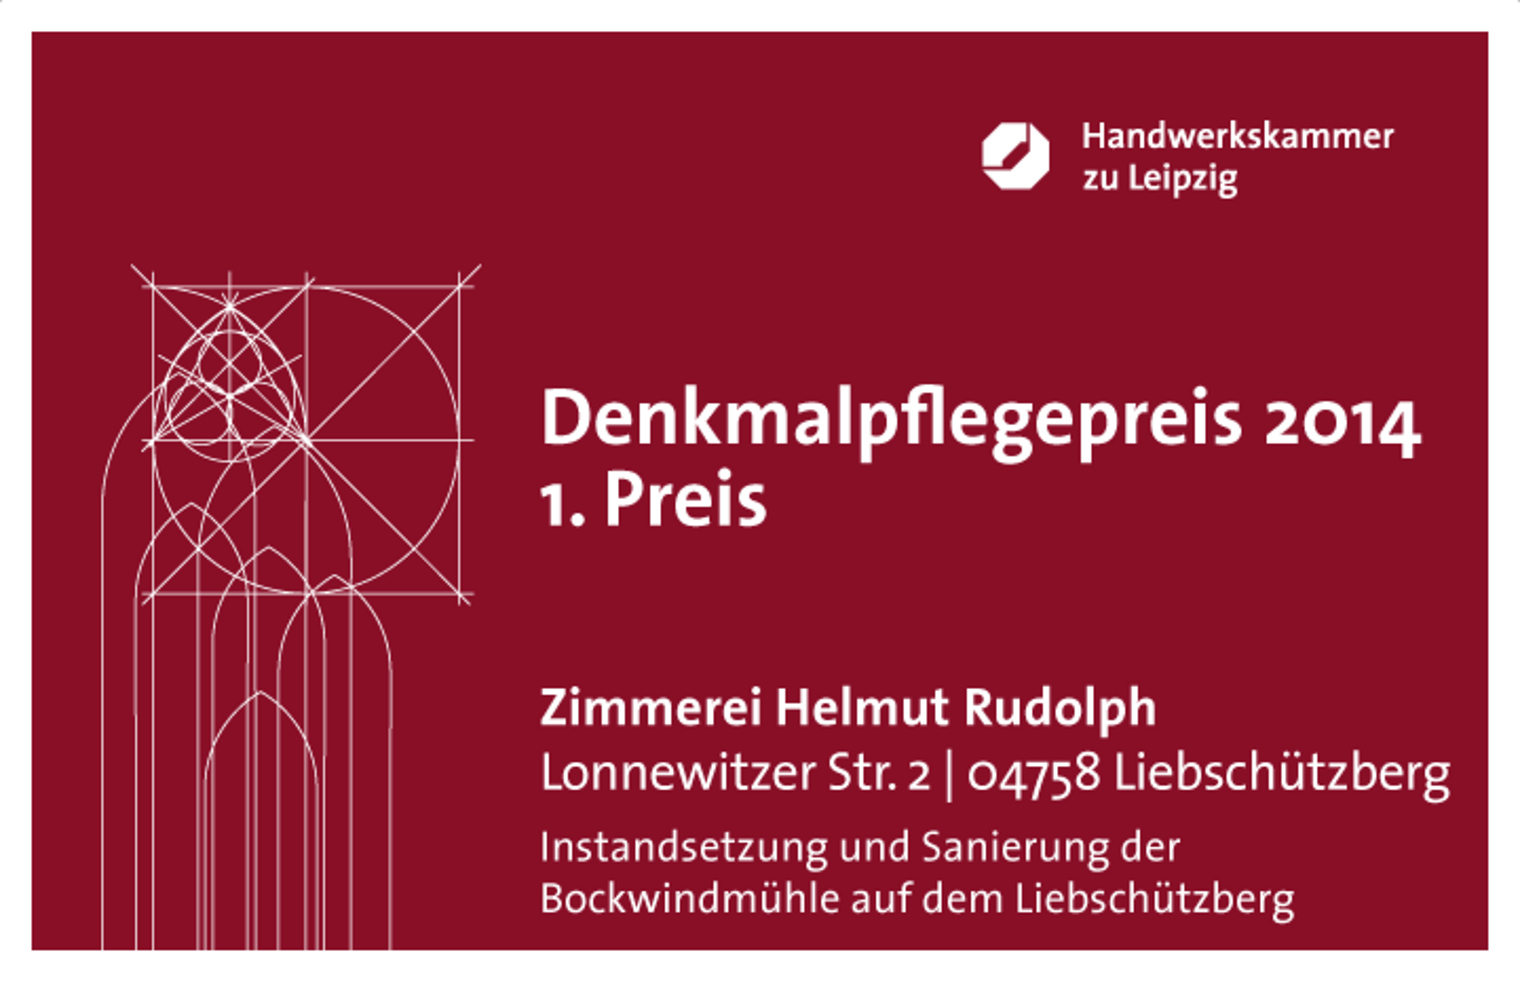 Denkmalpflegepreis 2014 der Handwerkskammer zu Leipzig 1